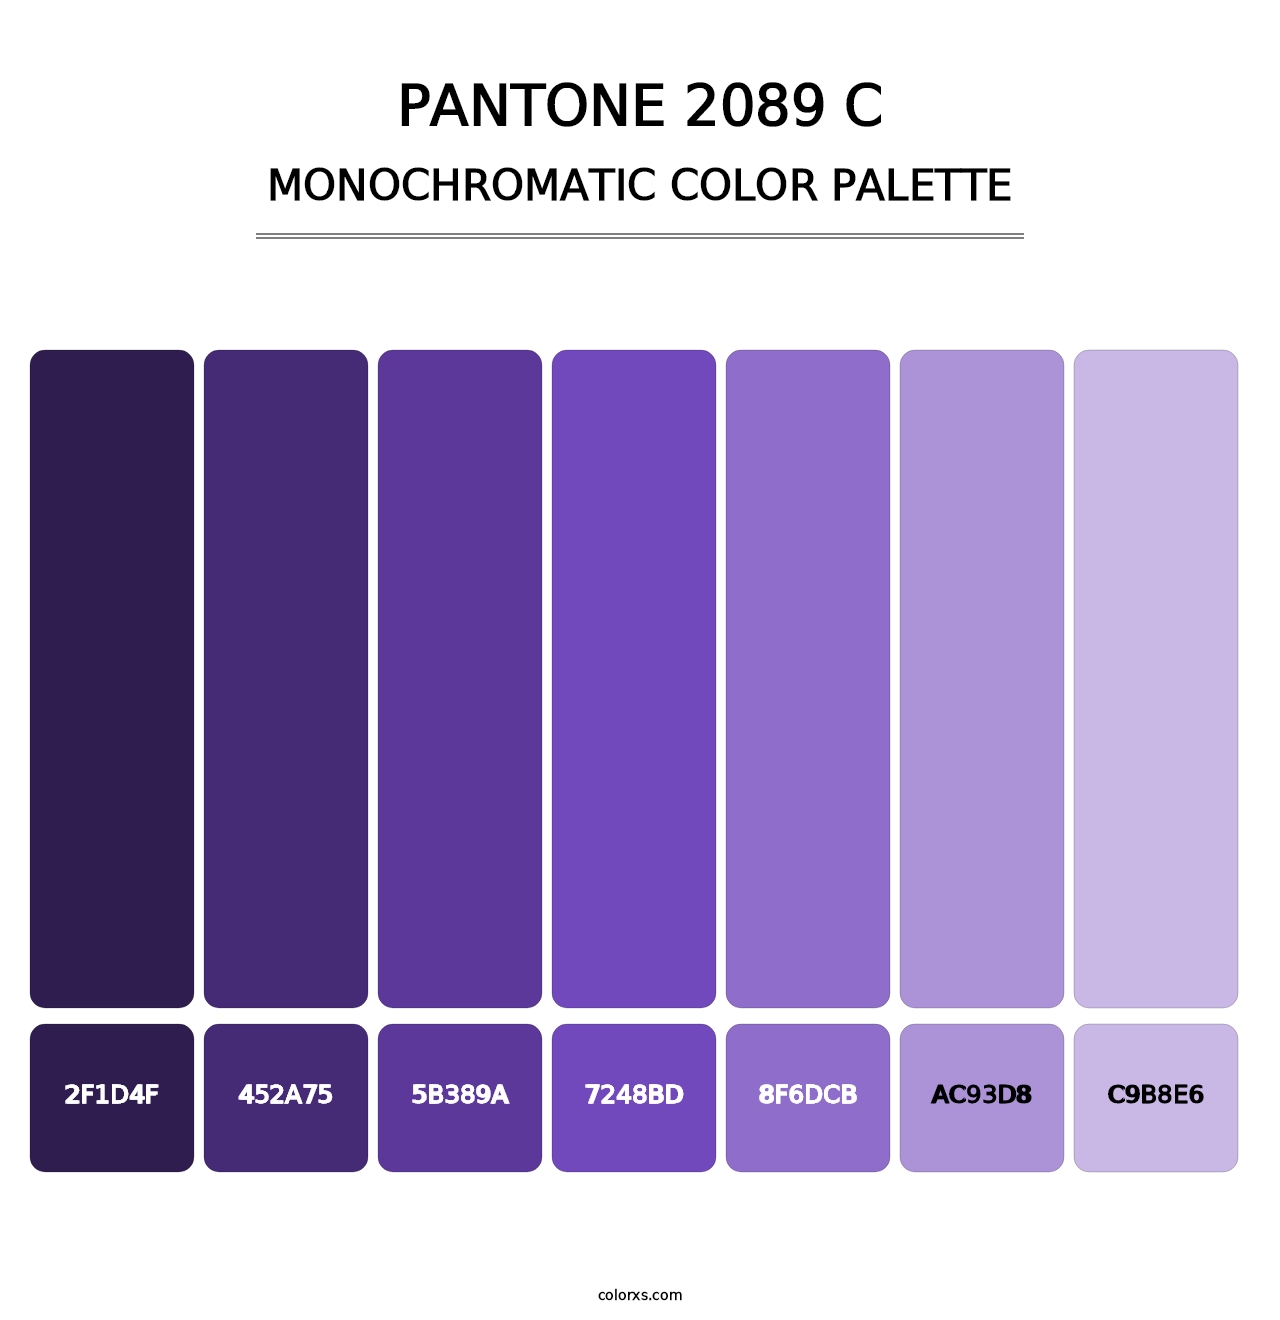 PANTONE 2089 C - Monochromatic Color Palette